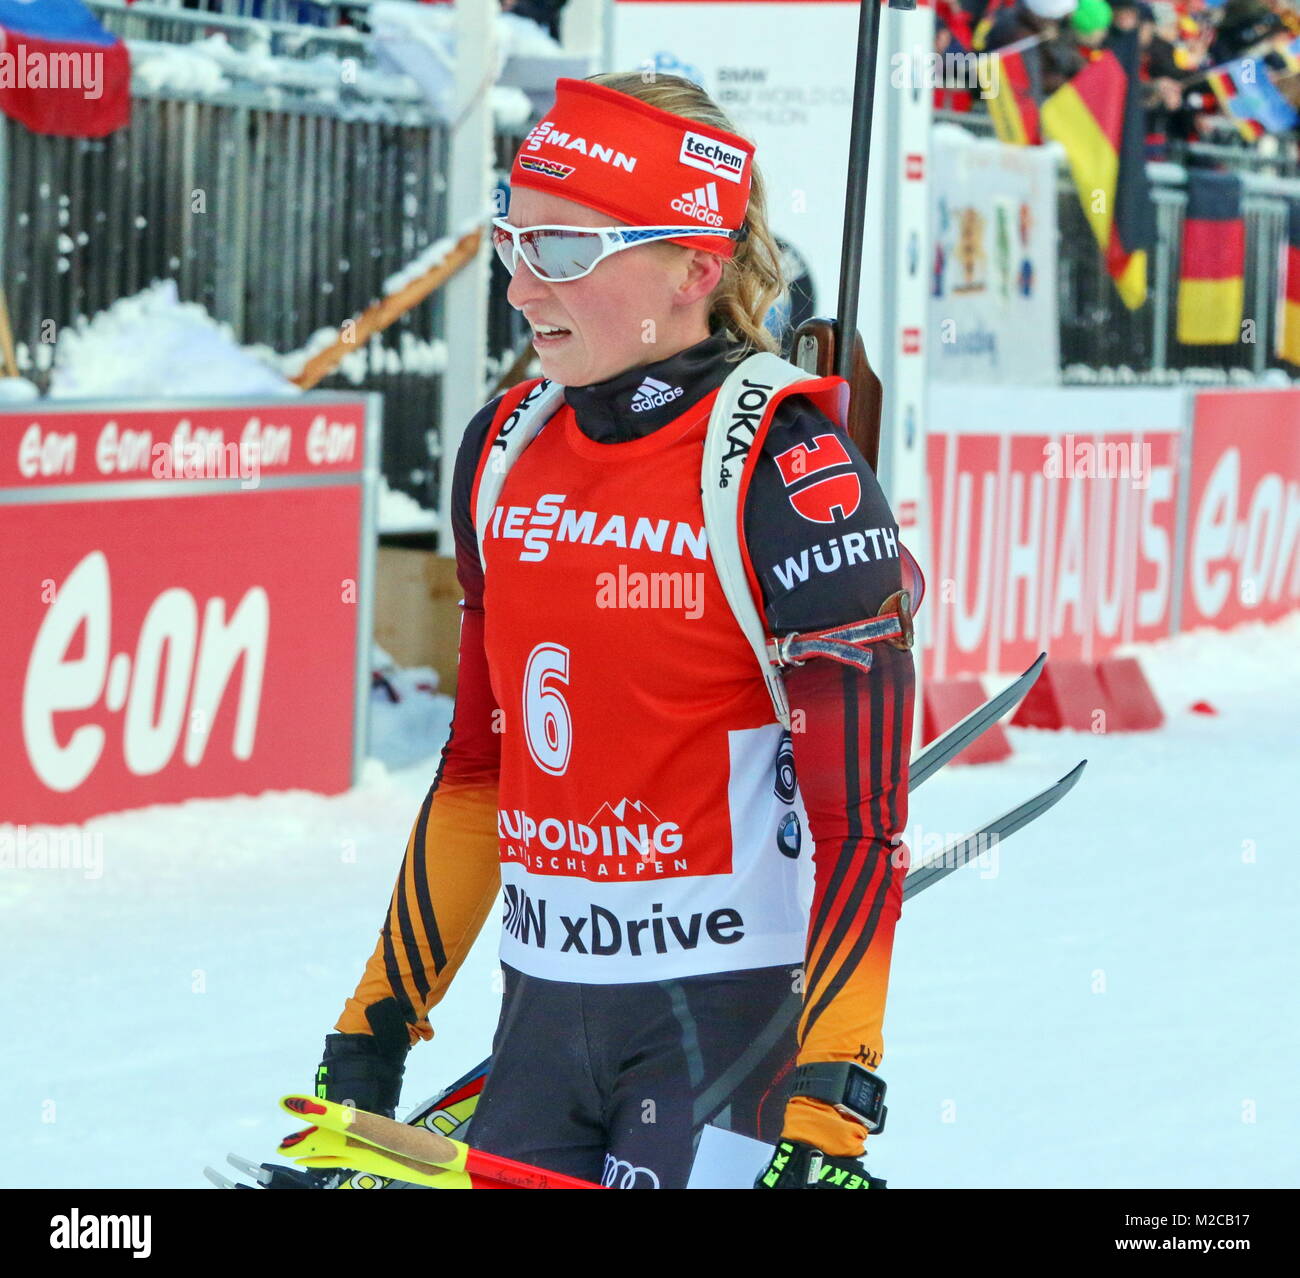 Leise enttäuscht verlässt Franziska Hildebrand beim IBU Weltcup Biathlon Massenstart Frauen in Ruhpolding / Rang 14 das Zielgelände. Stockfoto